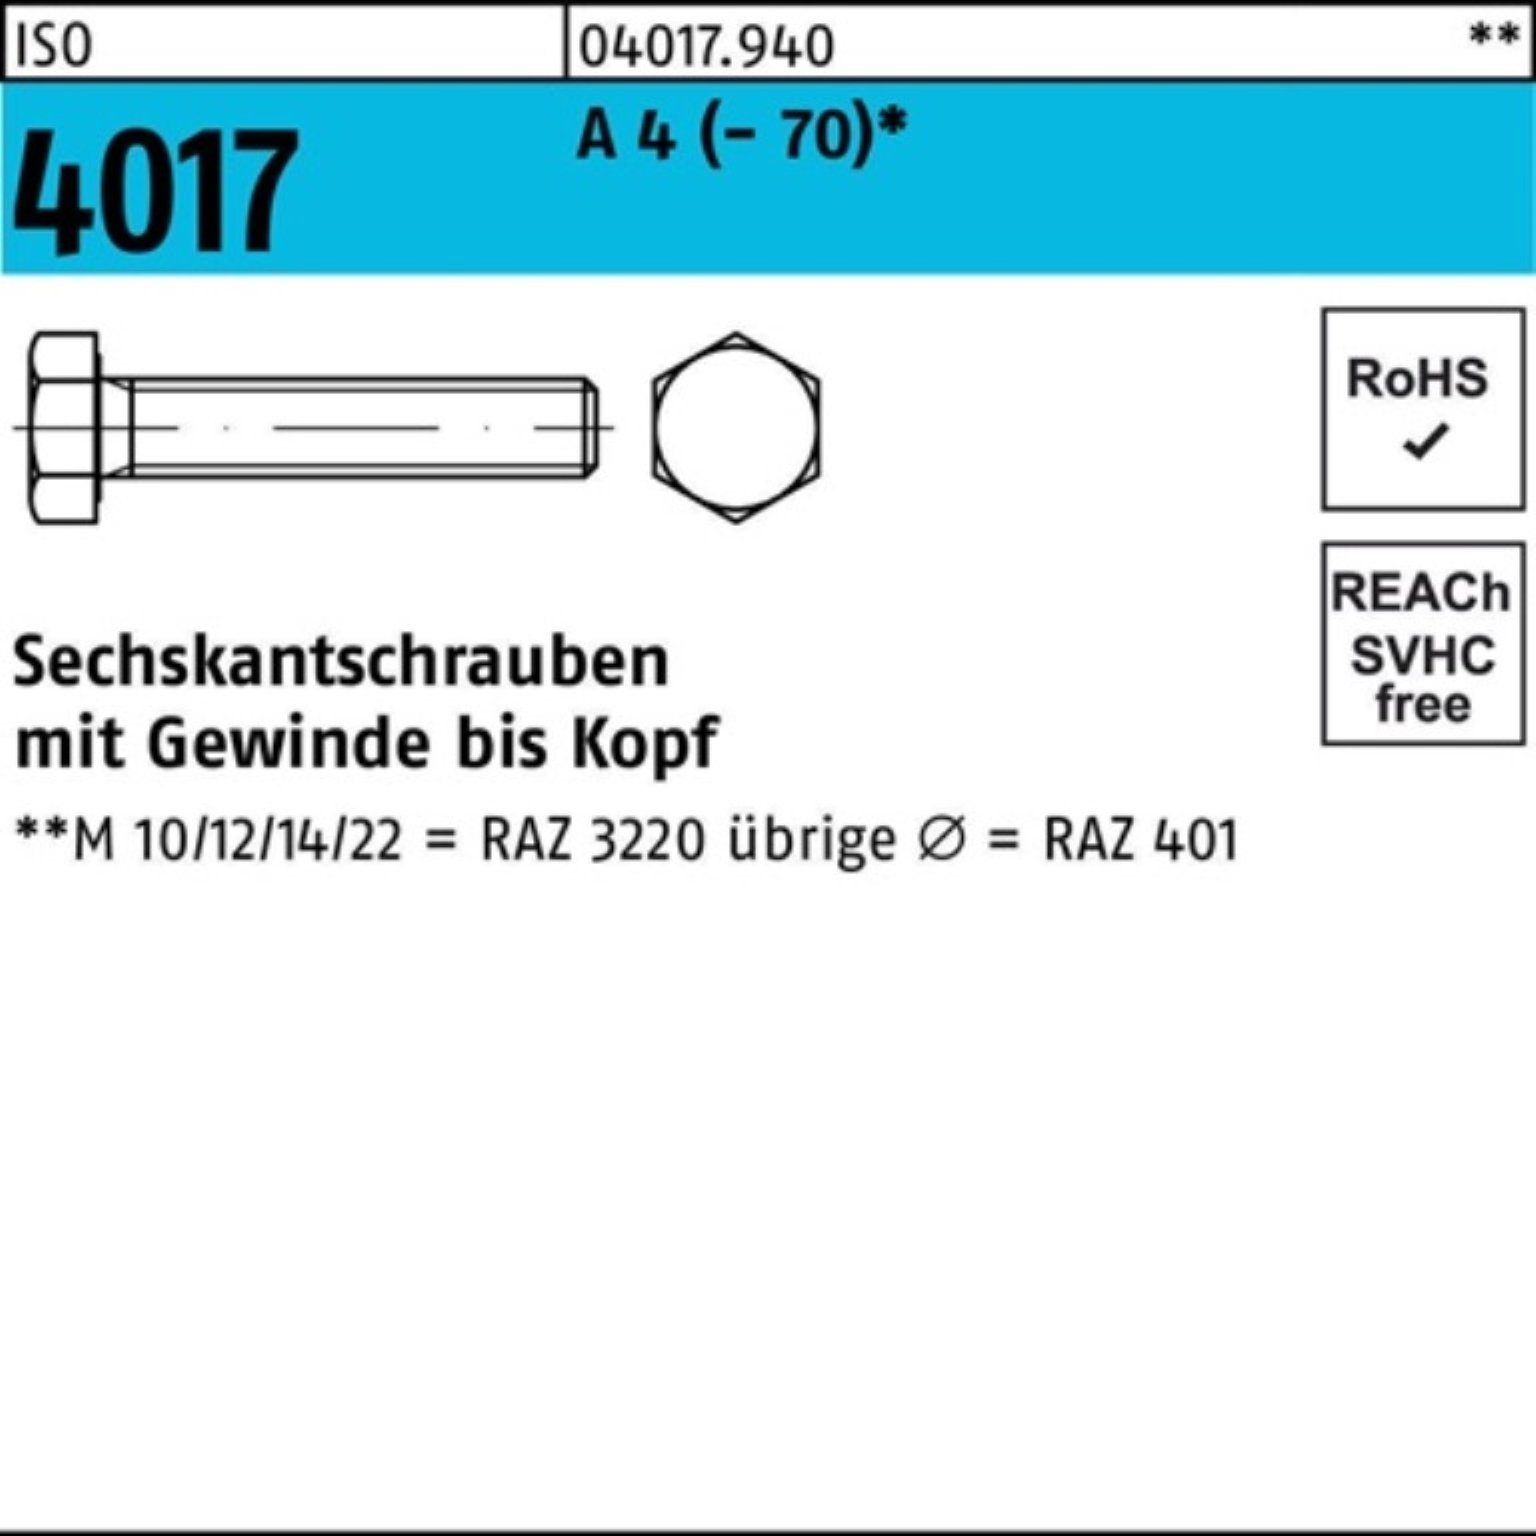 Bufab Sechskantschraube 100er Pack Sechskantschraube ISO 4017 VG M27x 70 A 4 (70) 1 Stück I